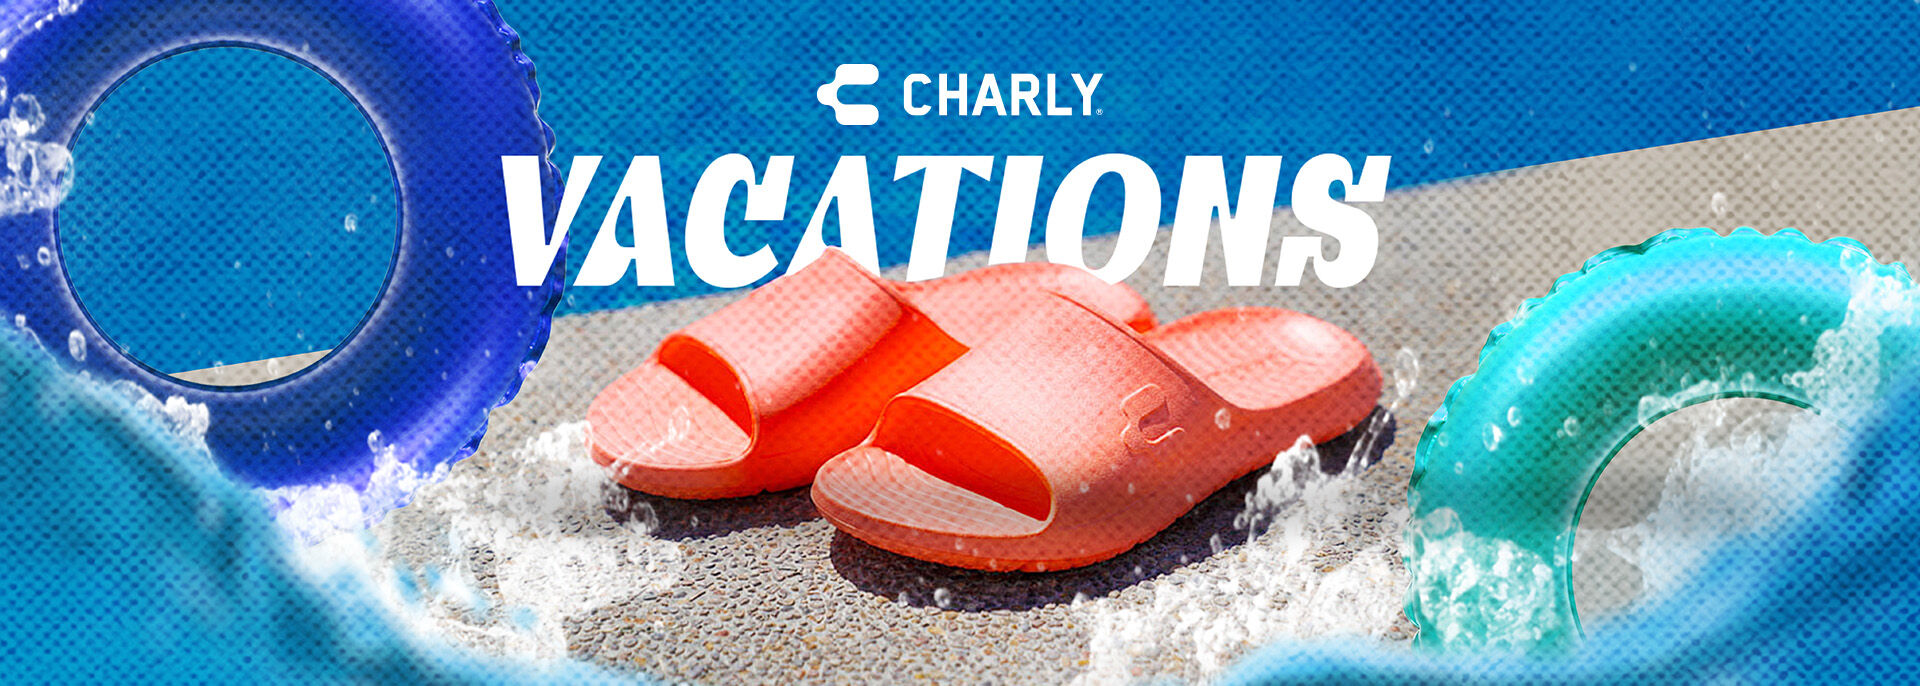 Charly_Vacaciones_US_D.jpg